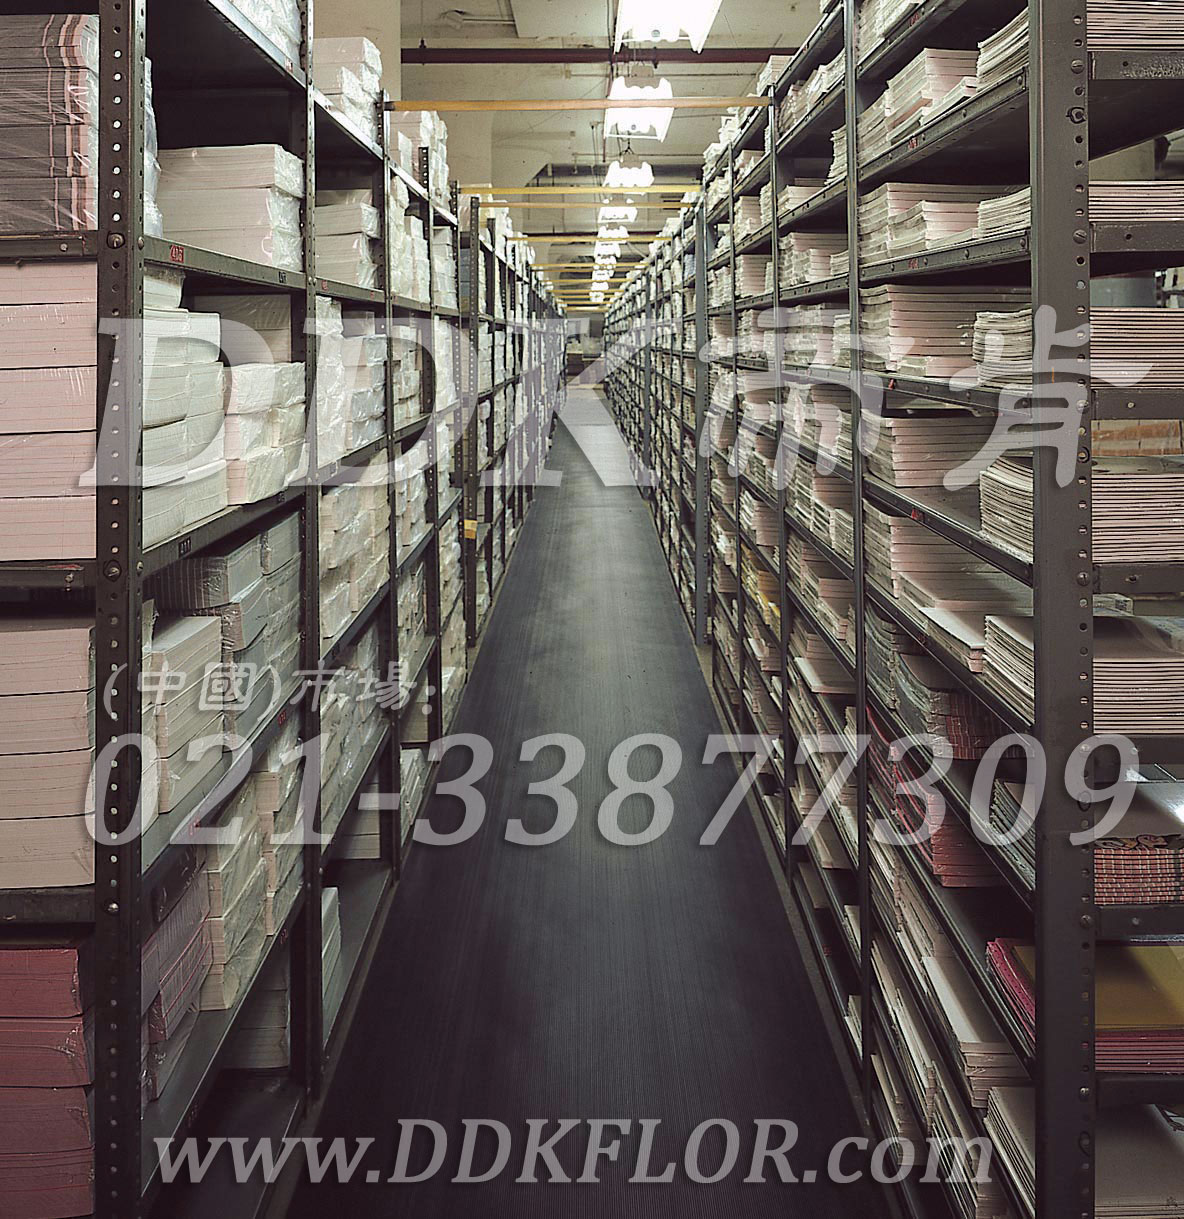 帝肯（DDK）_S450_9979工厂通道地毯、安全地毯、过道地毯、走道地毯、工业地毯、